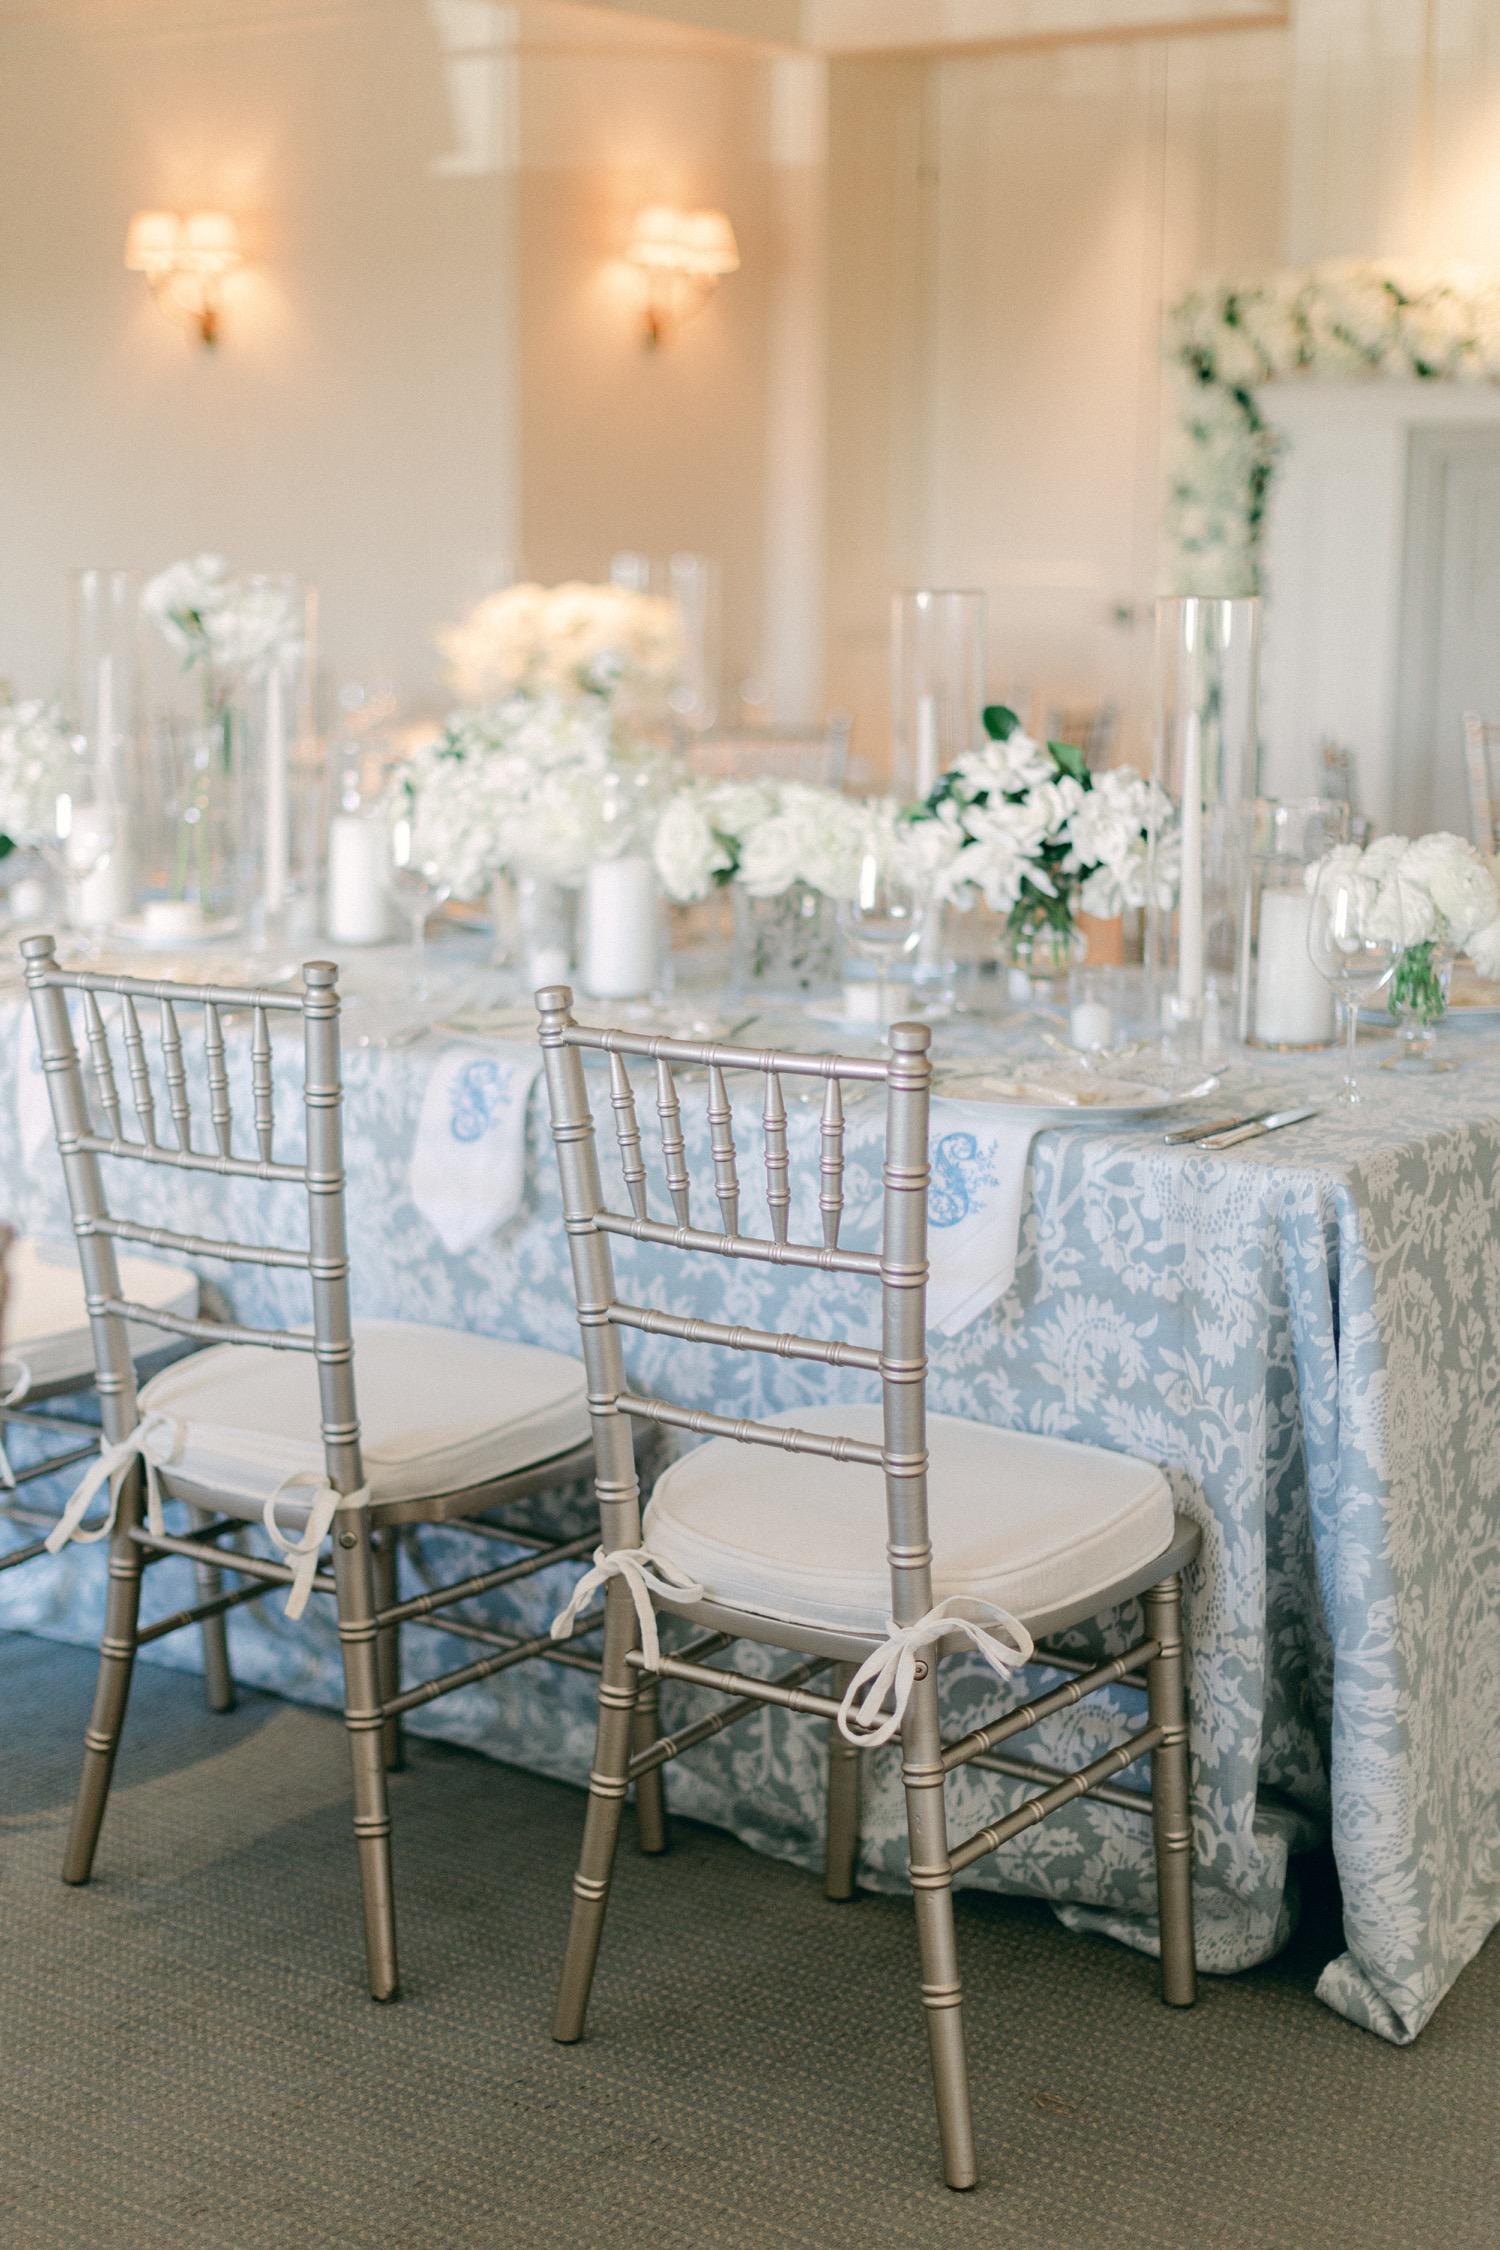 Dallas Country Club Wedding Full of Elegant Details